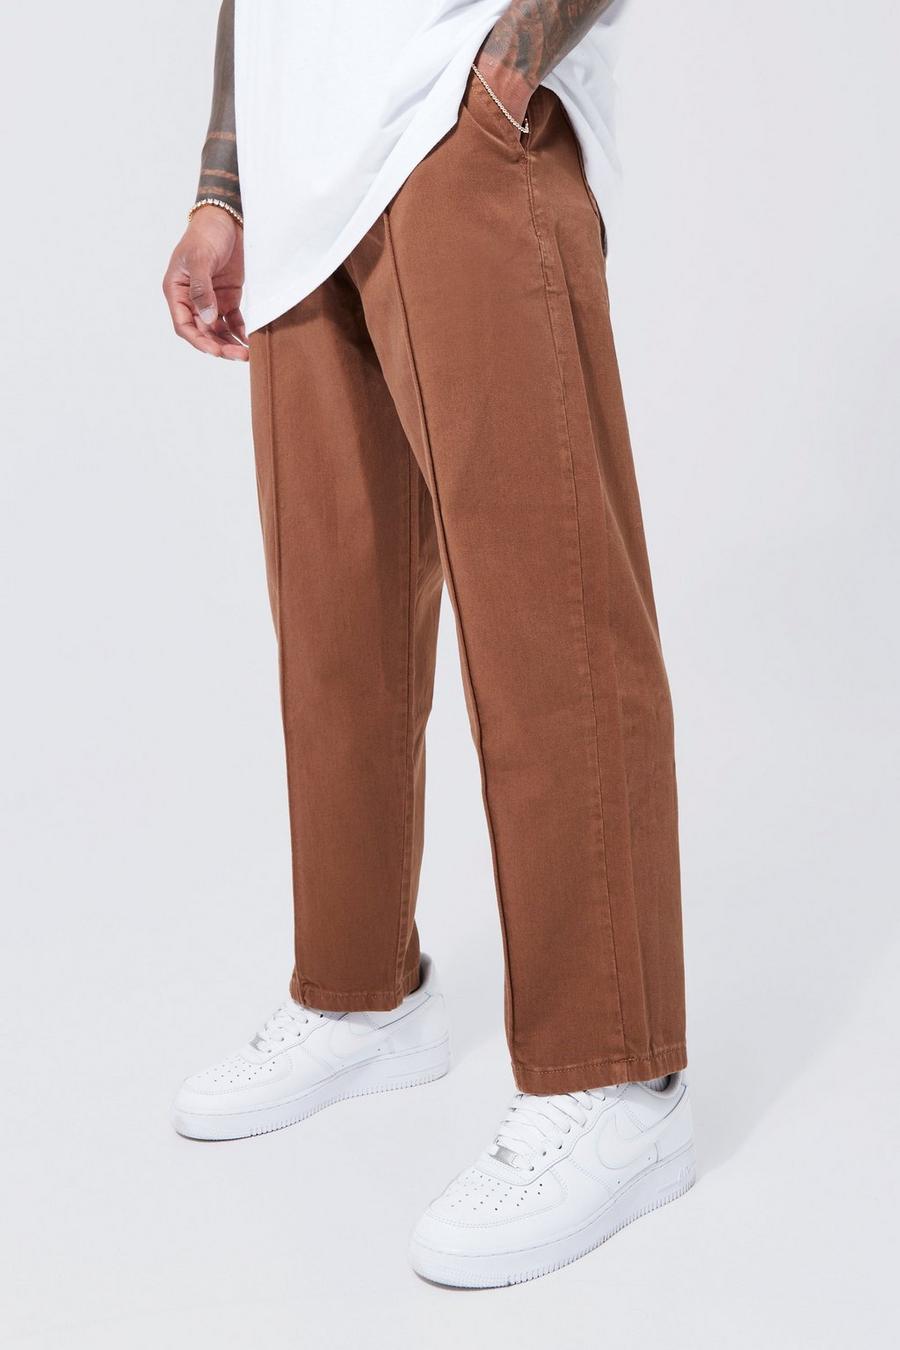 Pantaloni Skate Fit effetto velluto con vita elasticizzata, Tan marrone